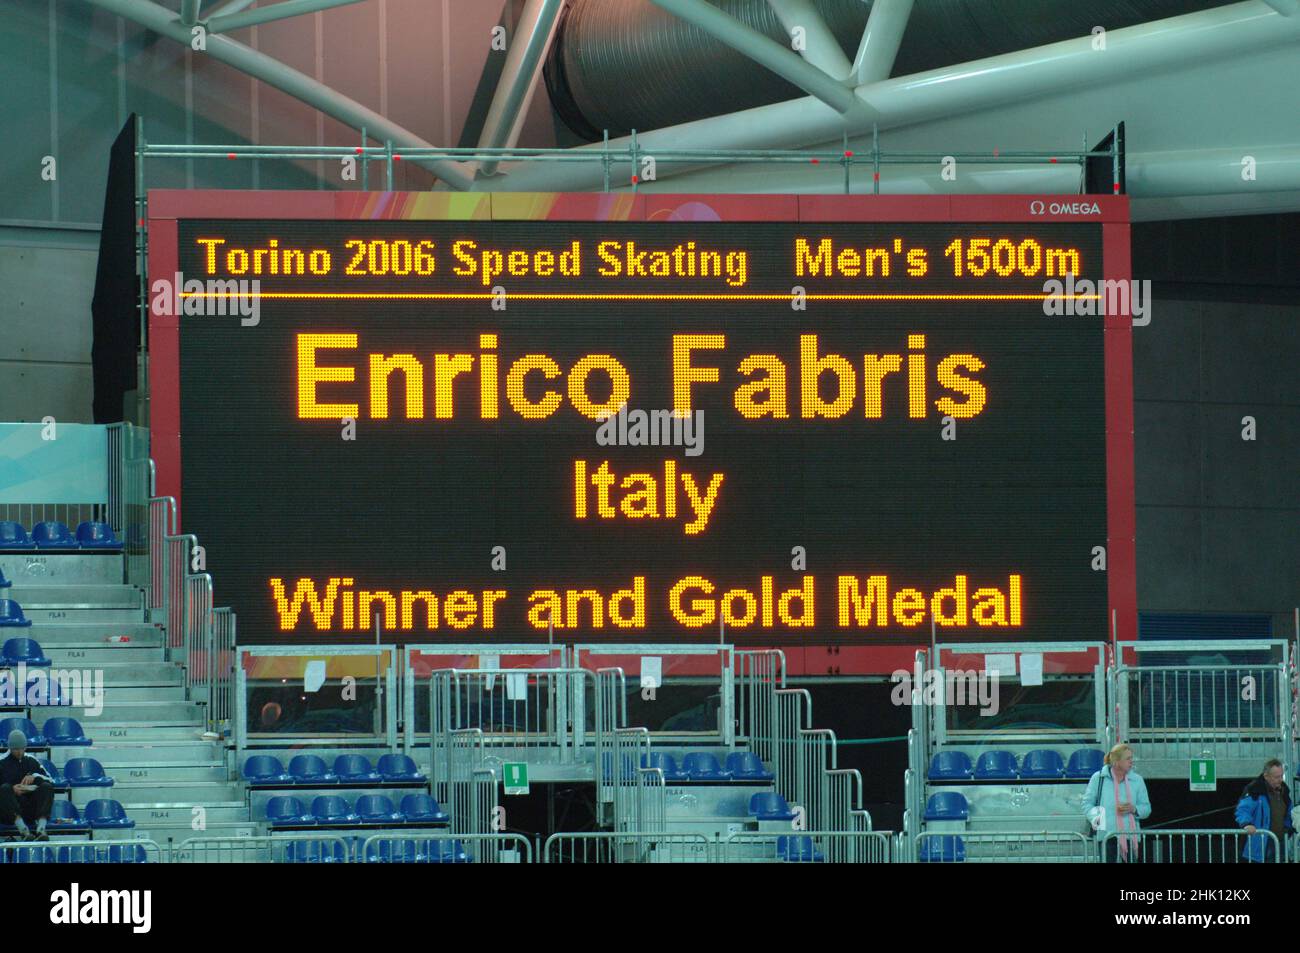 Turin Italien 2006-02-21 : Turin 2006 Olympische Winterspiele, Oval Lingotto Speed Skating 1500 mt, die leuchtende Tafel zeigt den Sieger des Rennens an, Enrico Fabris Gewinner der Goldmedaille Stockfoto